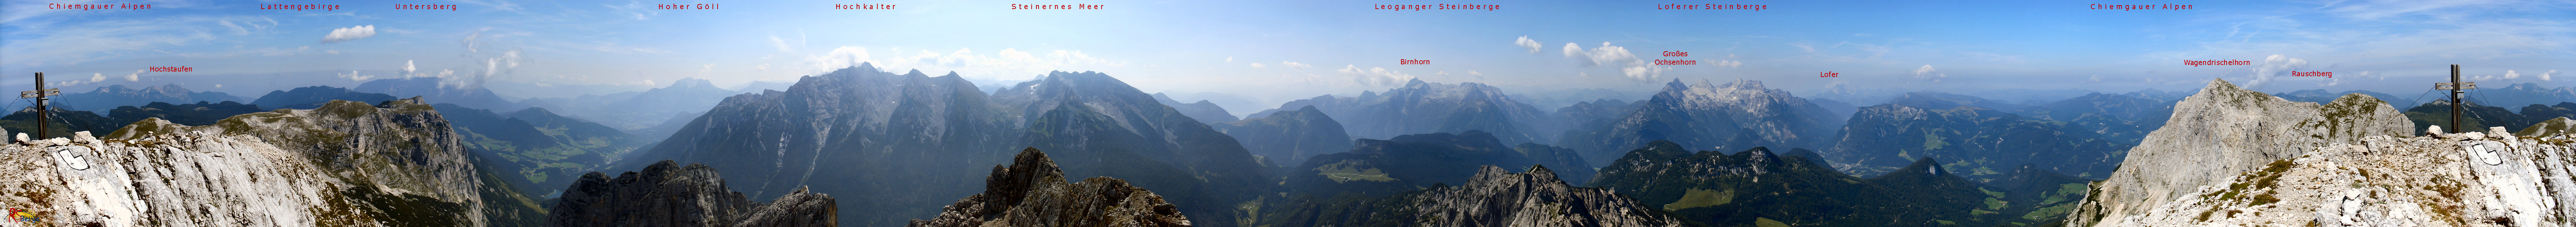 Wanderung Reiter Alpe Reiter Alm in den Berchtesgadener Alpen: 360 Grad Panorama am Gipfel des Stadelhornes